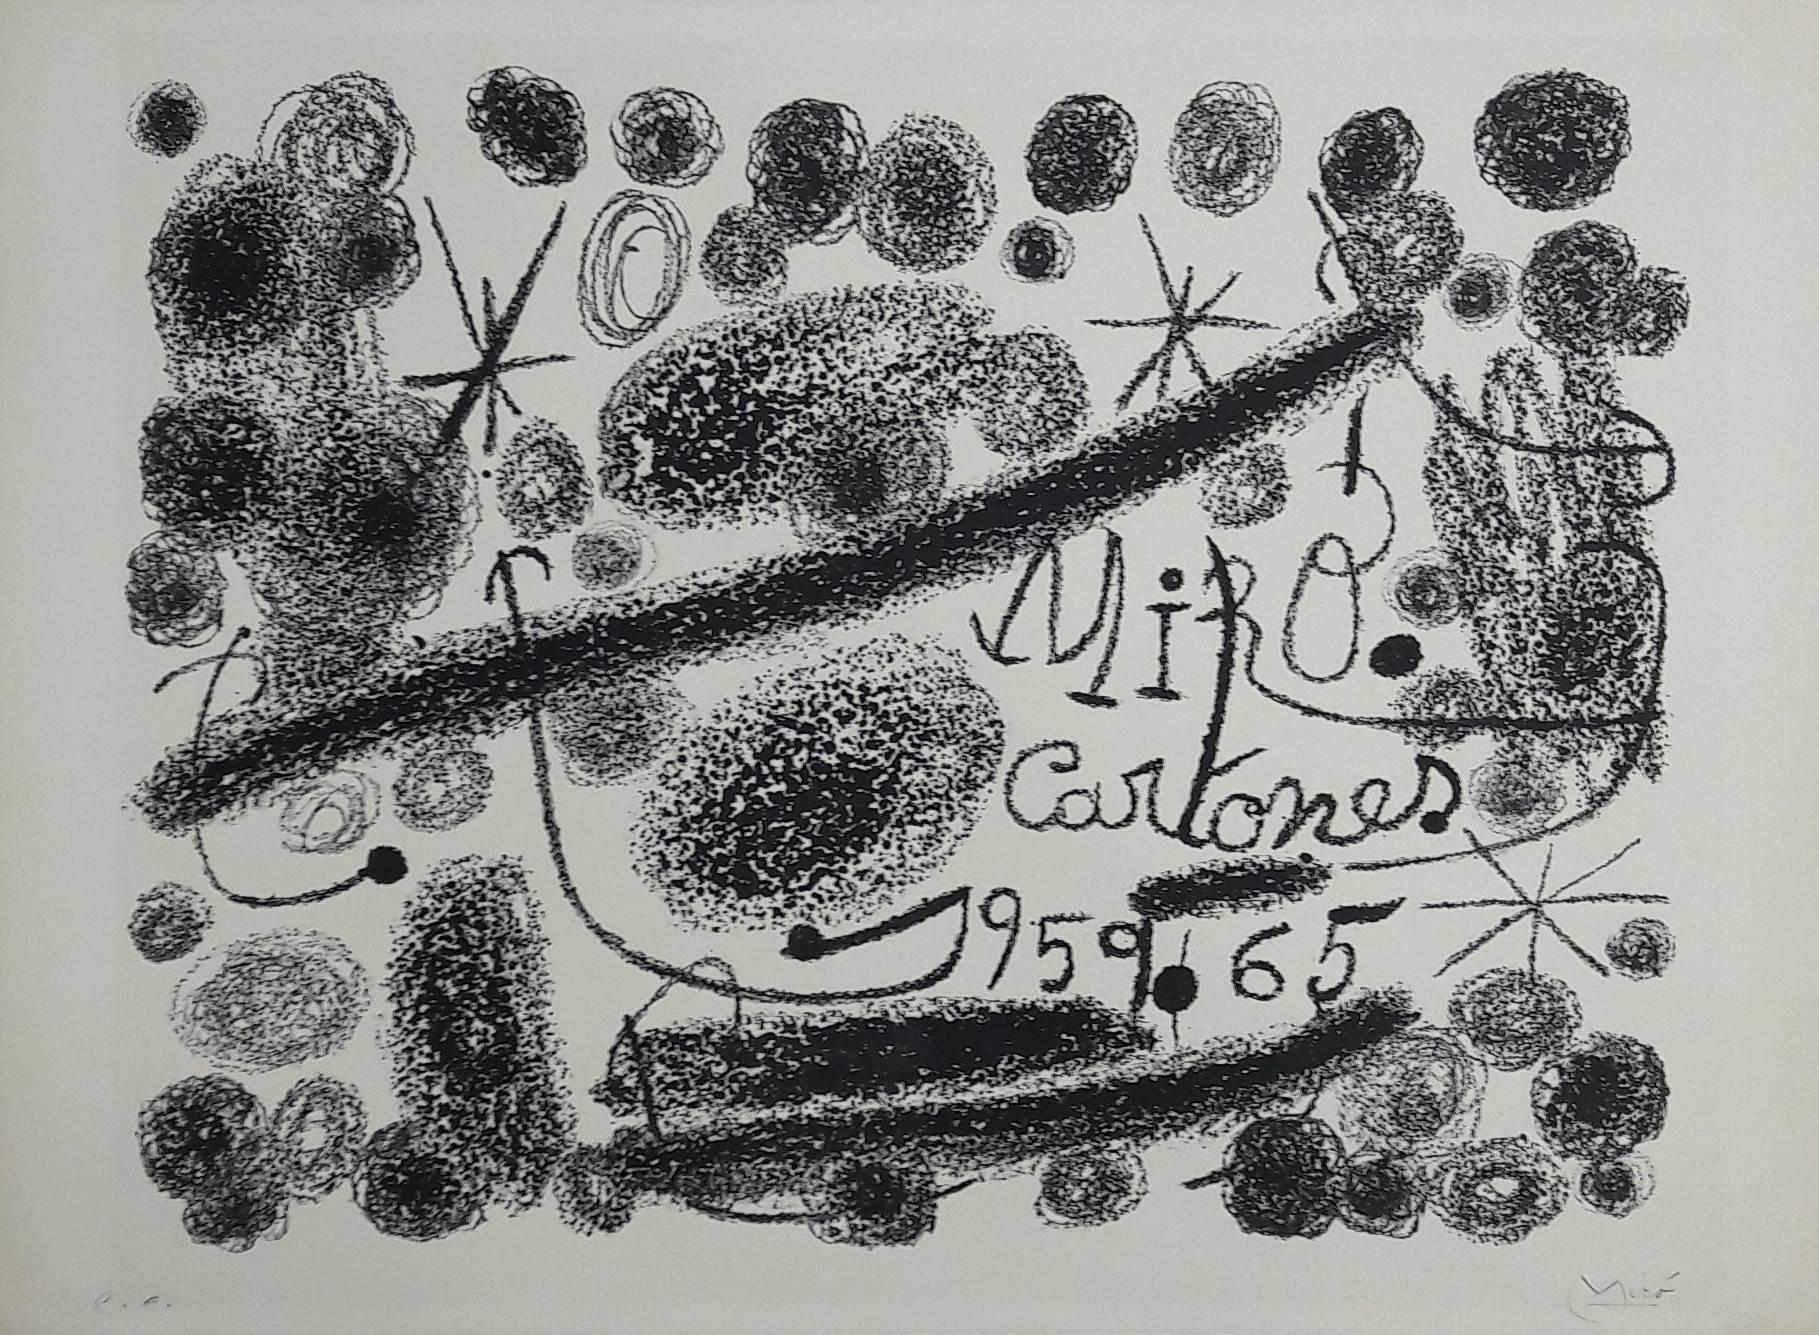 Joan Miró Abstract Print - Cartones - Original Lithograph Handsigned